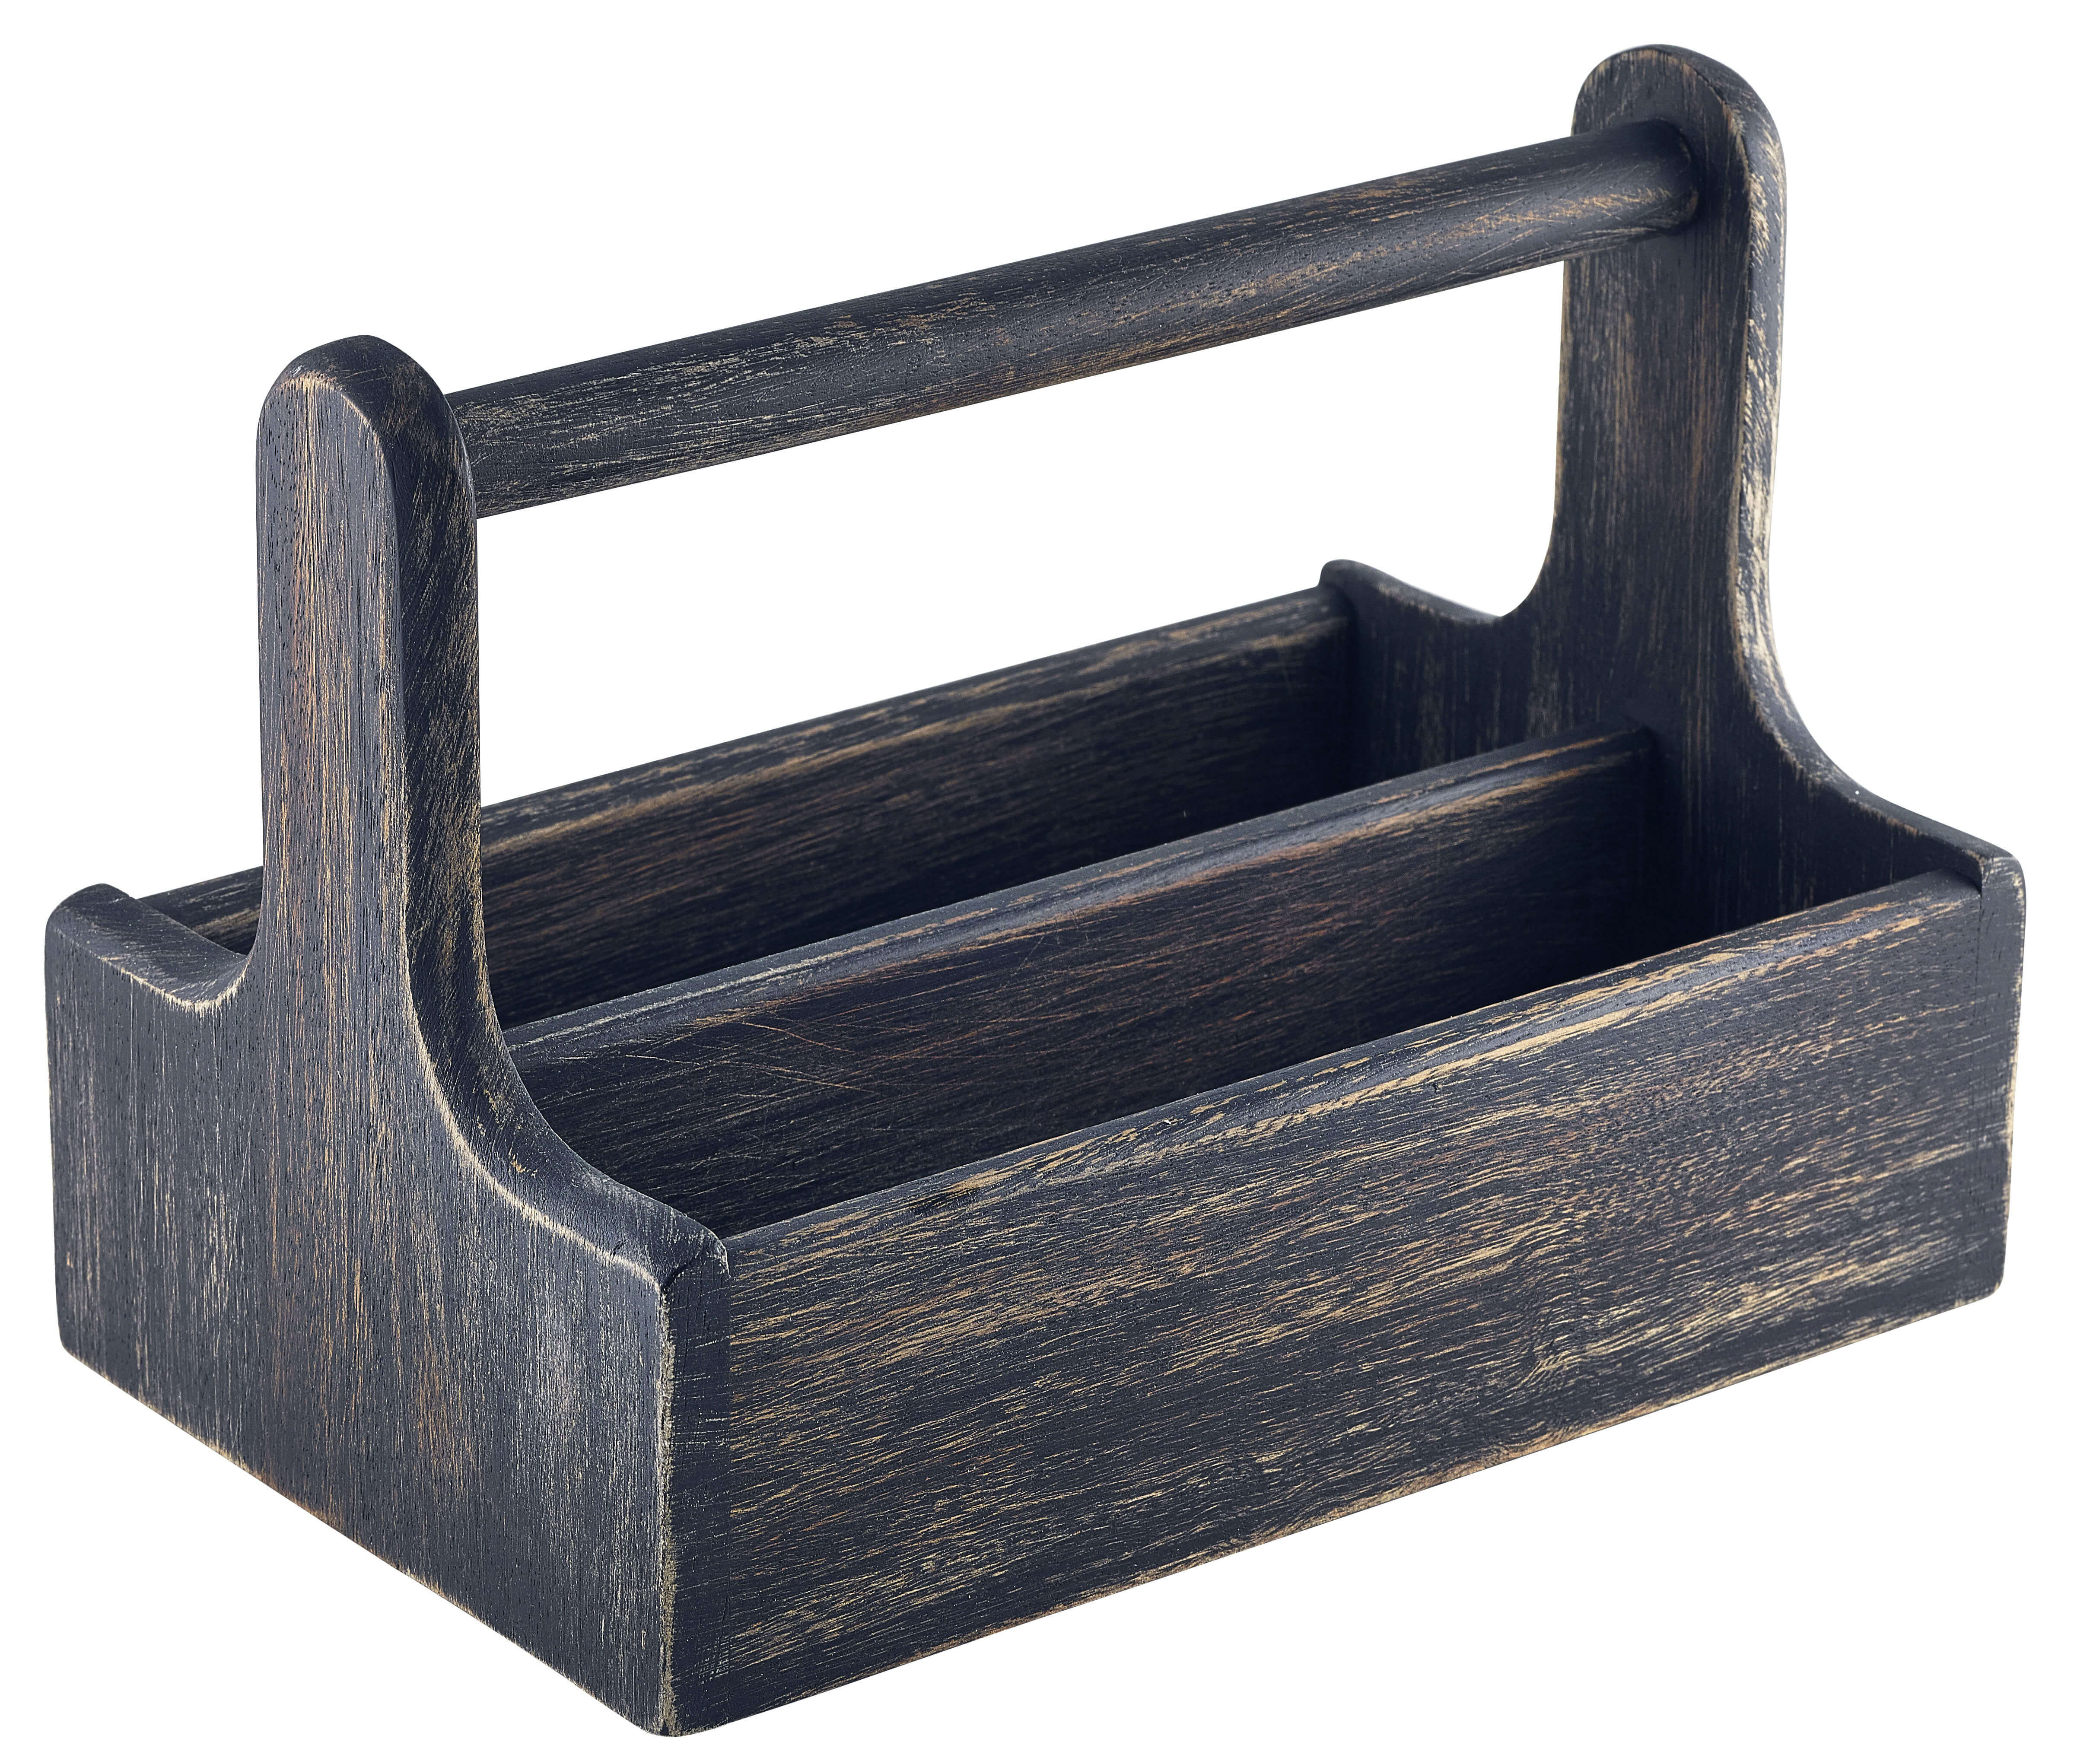 Table Caddy / Bar Organizer, Holz, schwarz - 25x15,7x18